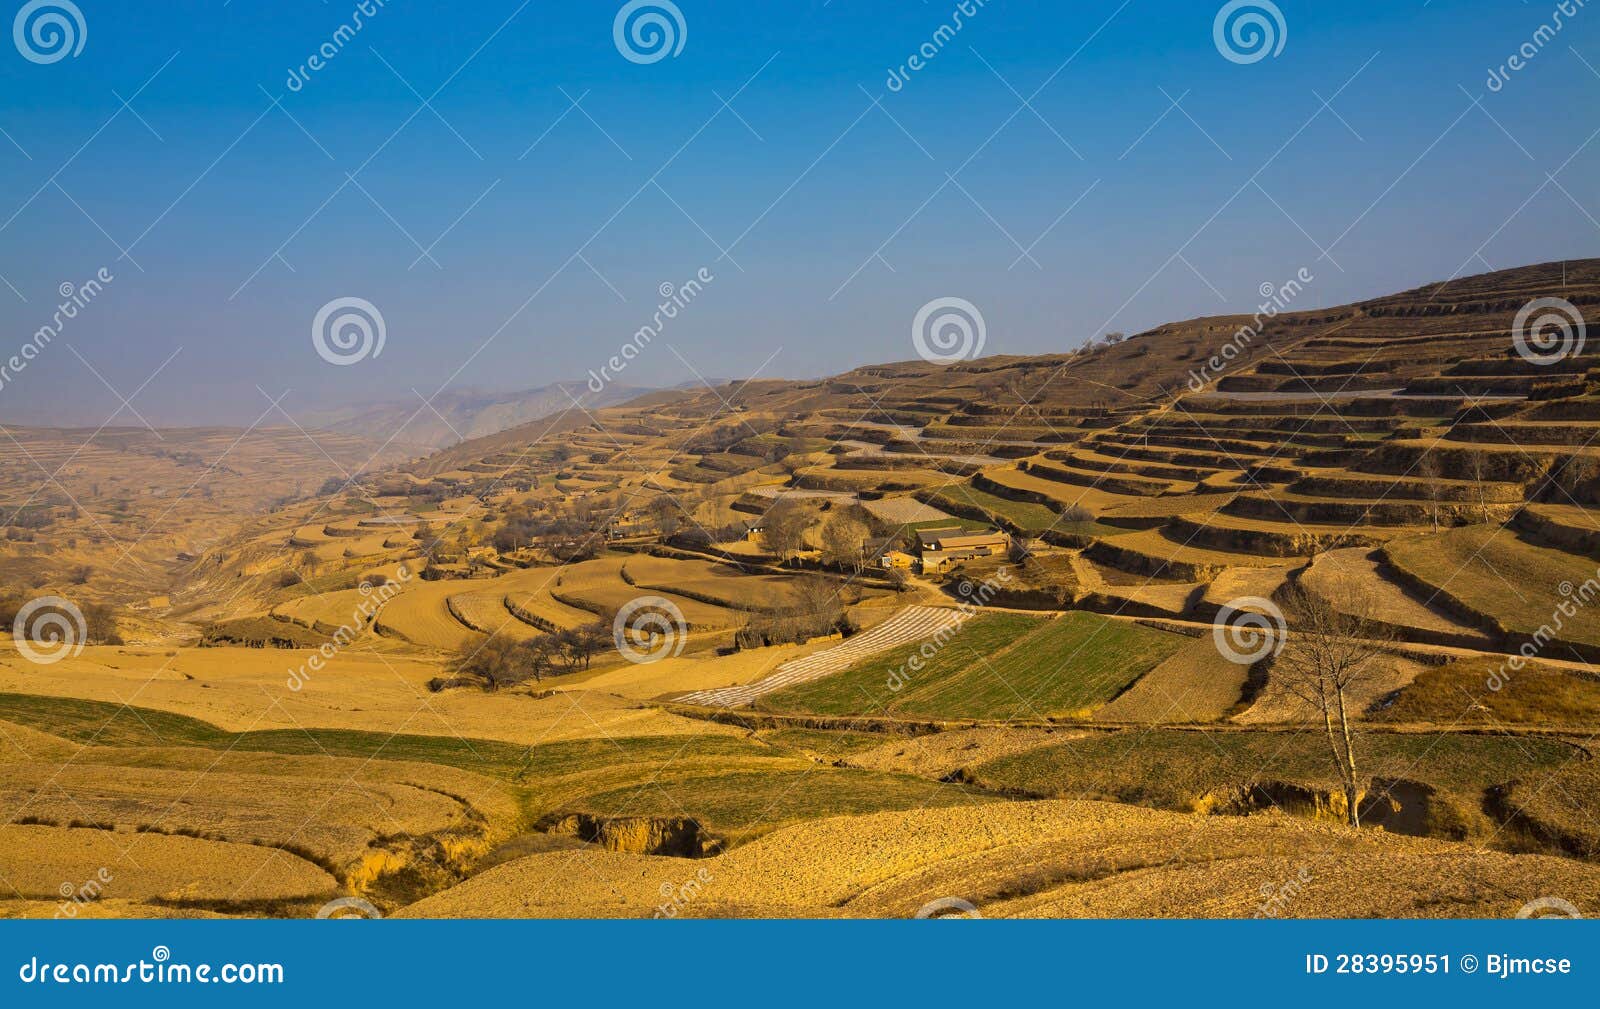 loess plateau farmland